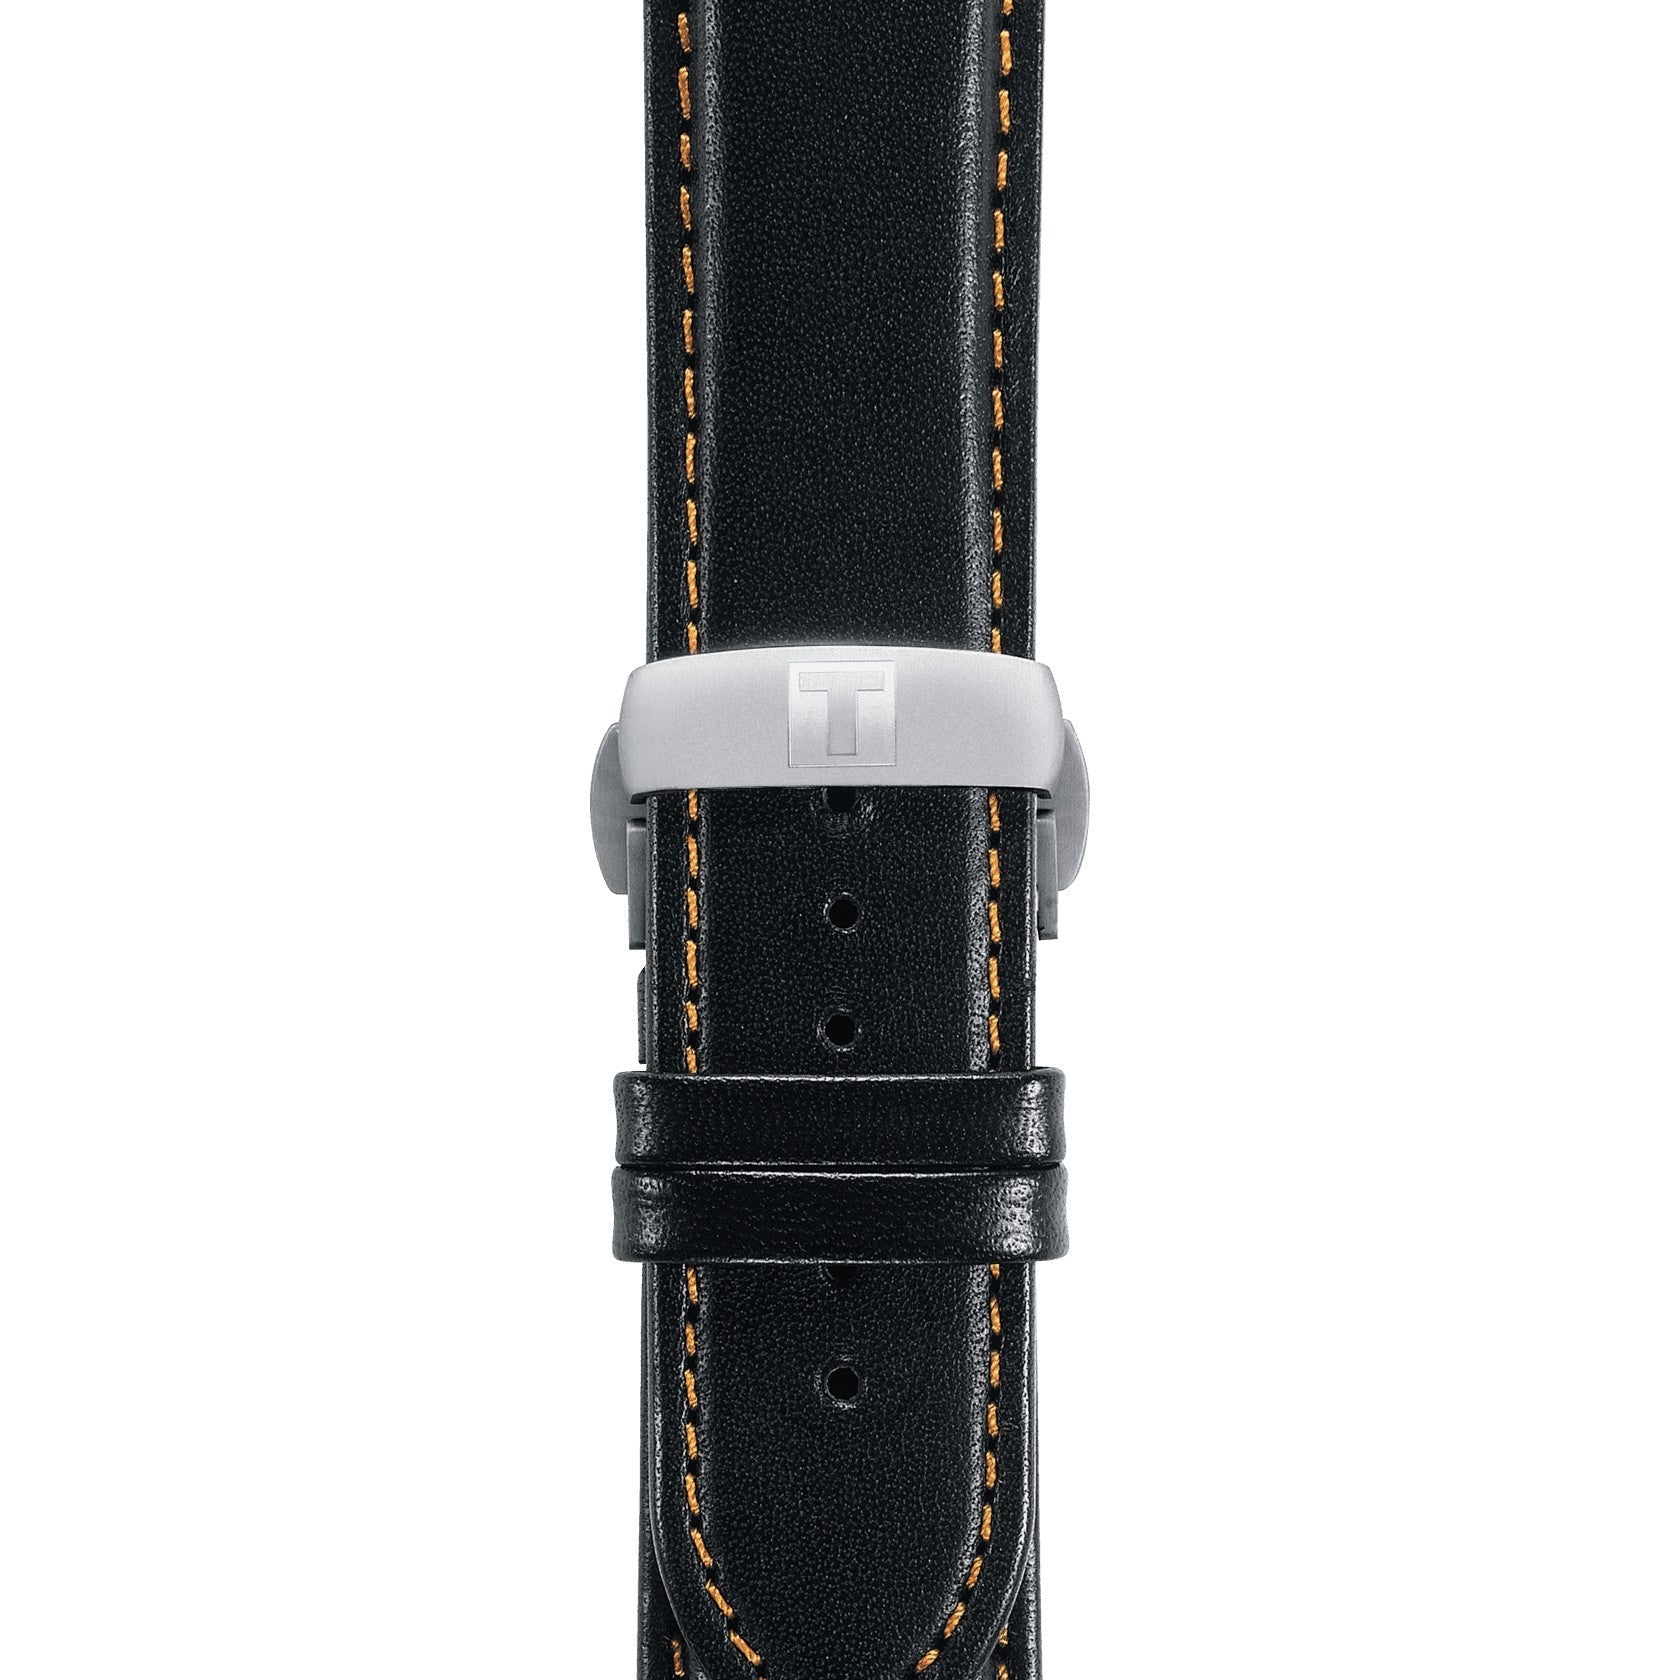 Tissot Tissot Couturier Automatic Black Dial Men's Watch T035.407.16.051.03